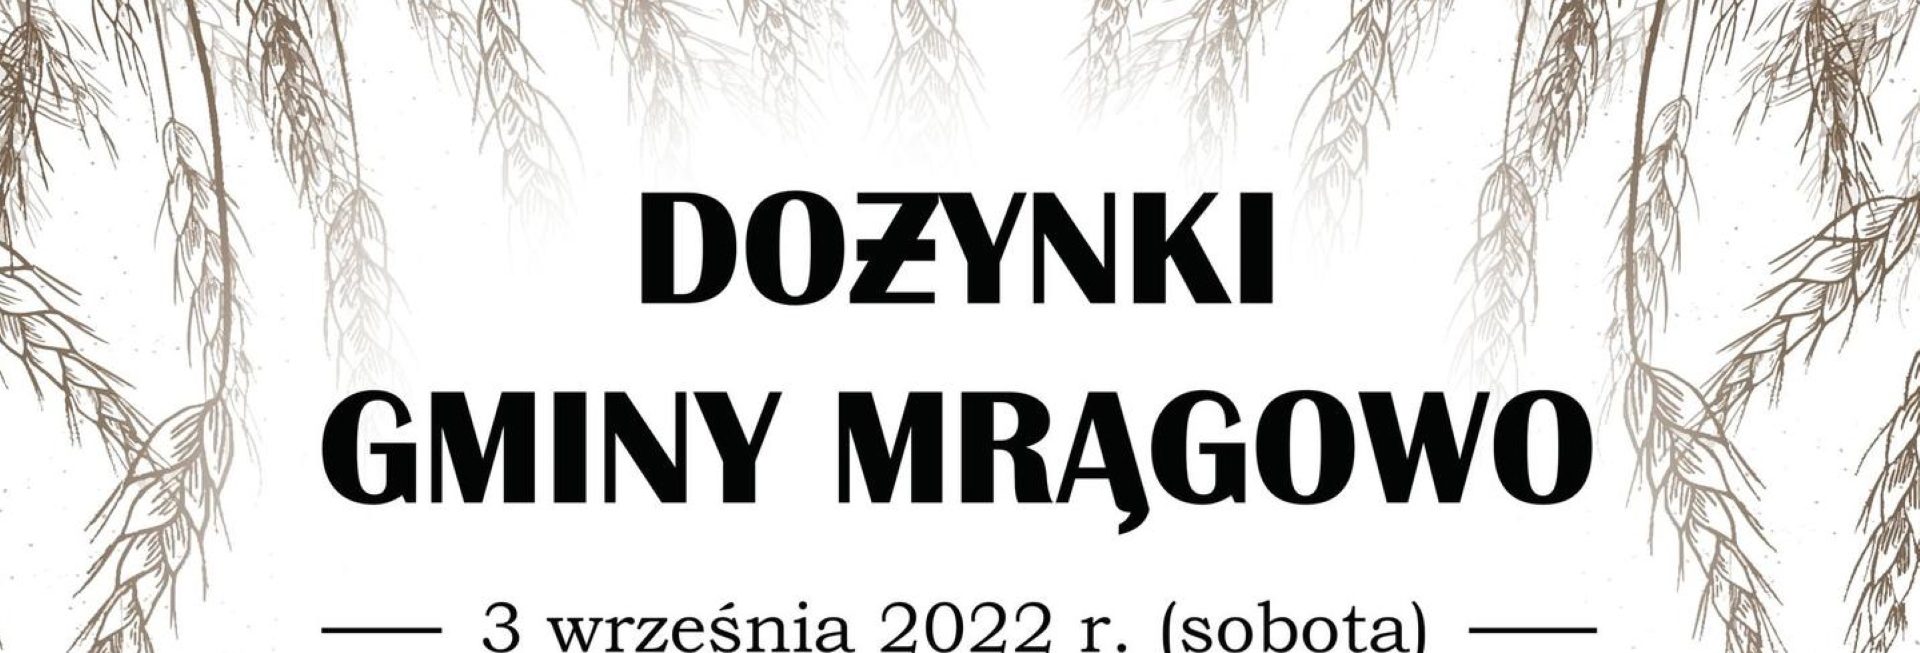 Plakat zapraszający do miejscowości Polska Wieś koło Mrągowa na Dożynki Gminy Mrągowo 2022.